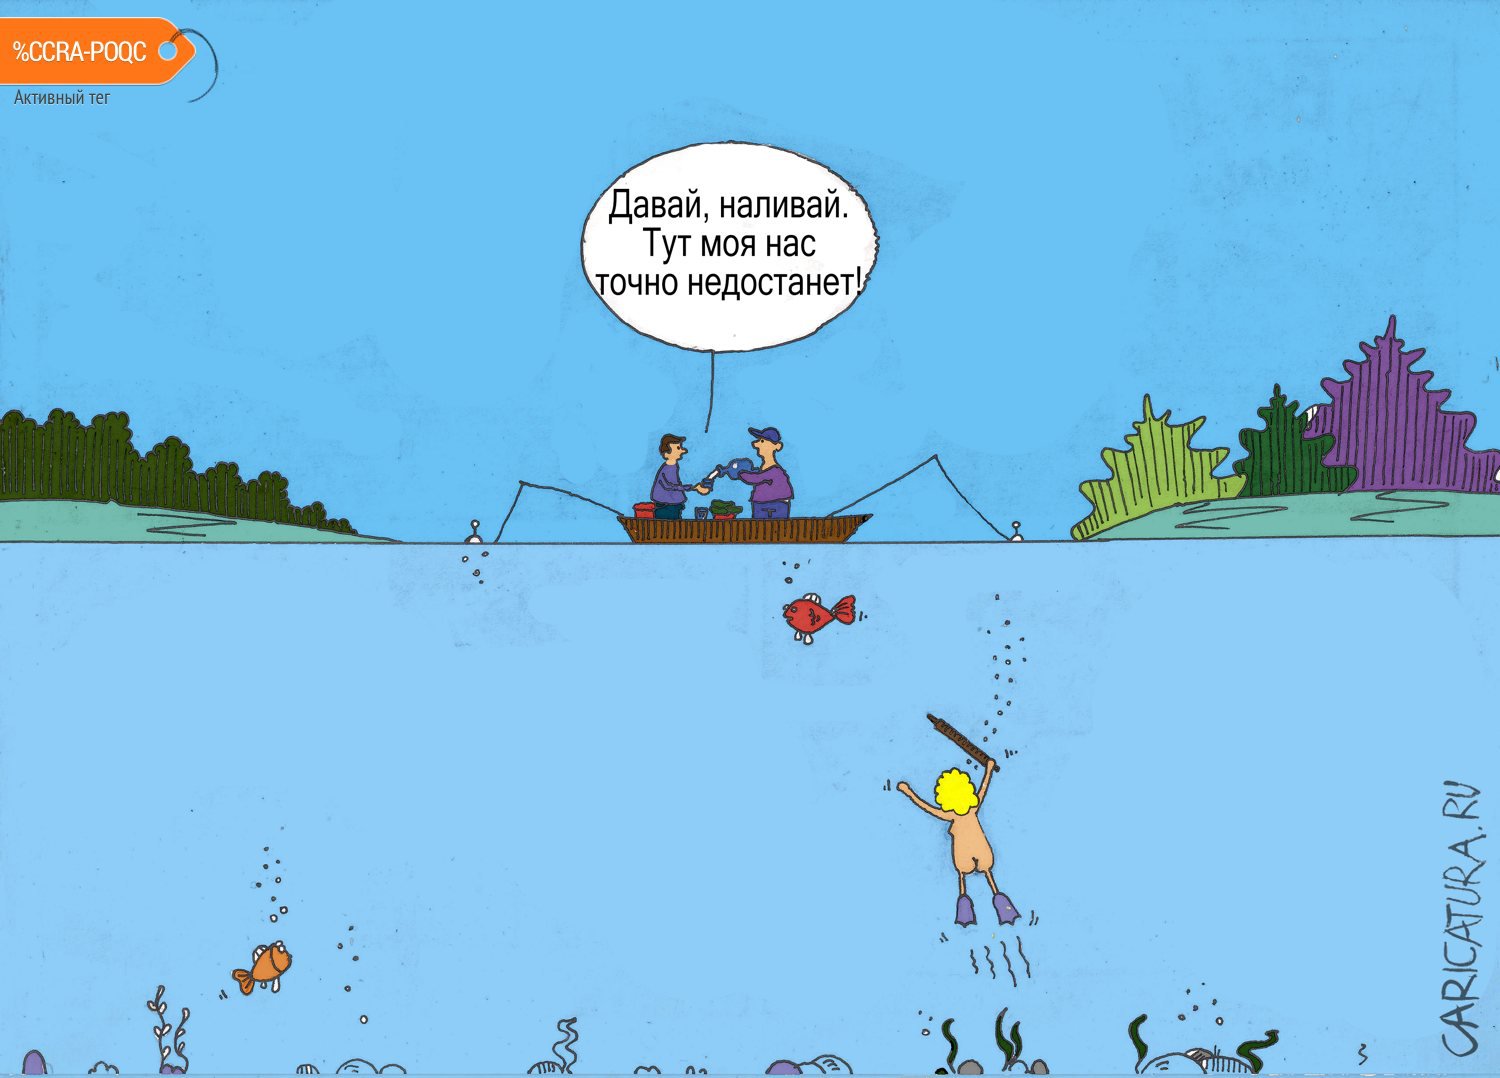 Карикатура "Рыбалка", Сергей Омельянчук